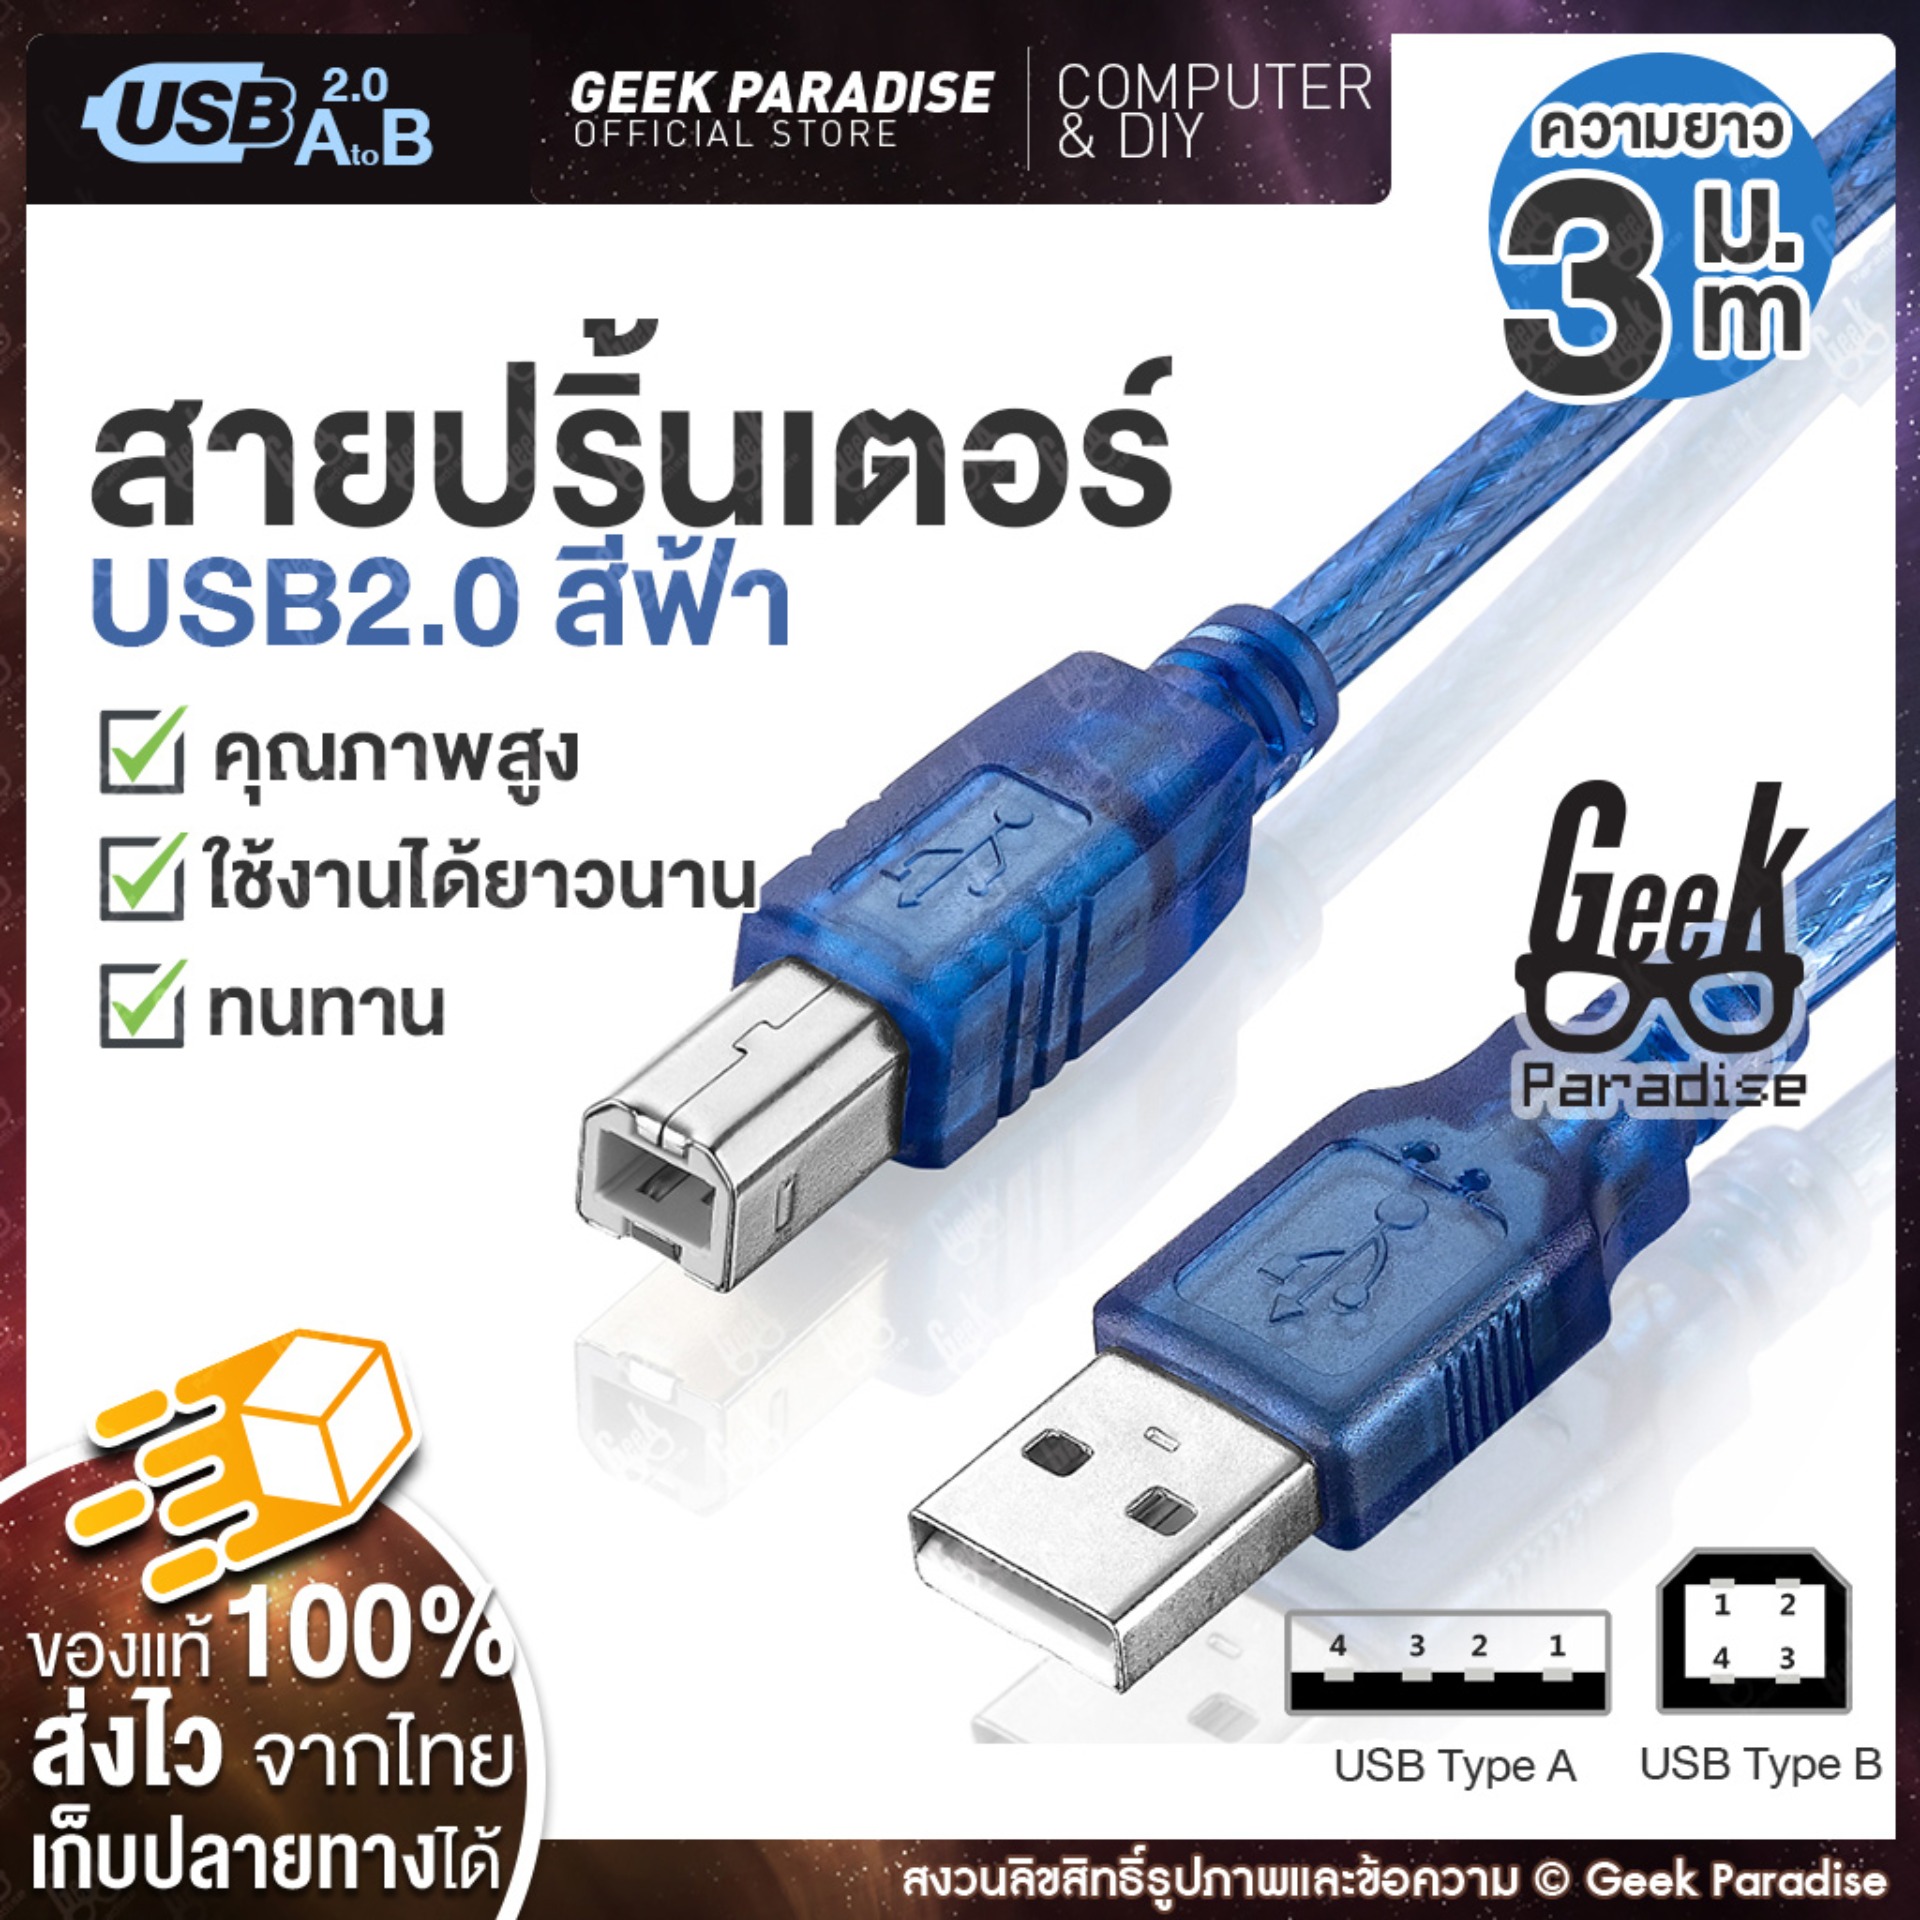 ใหม่ สินค้าขายดี! Geek Paradise สาย USB Printer 3 เมตร สำหรับเครื่องปริ้นเตอร์, สแกนเนอร์ ความเร็วสูง แบบพอร์ต  Type A Male To B Male สายปริ้นเตอร์เกรด A คุณภาพสูง พร้อมวงจรป้องกันไฟฟ้าสถิต